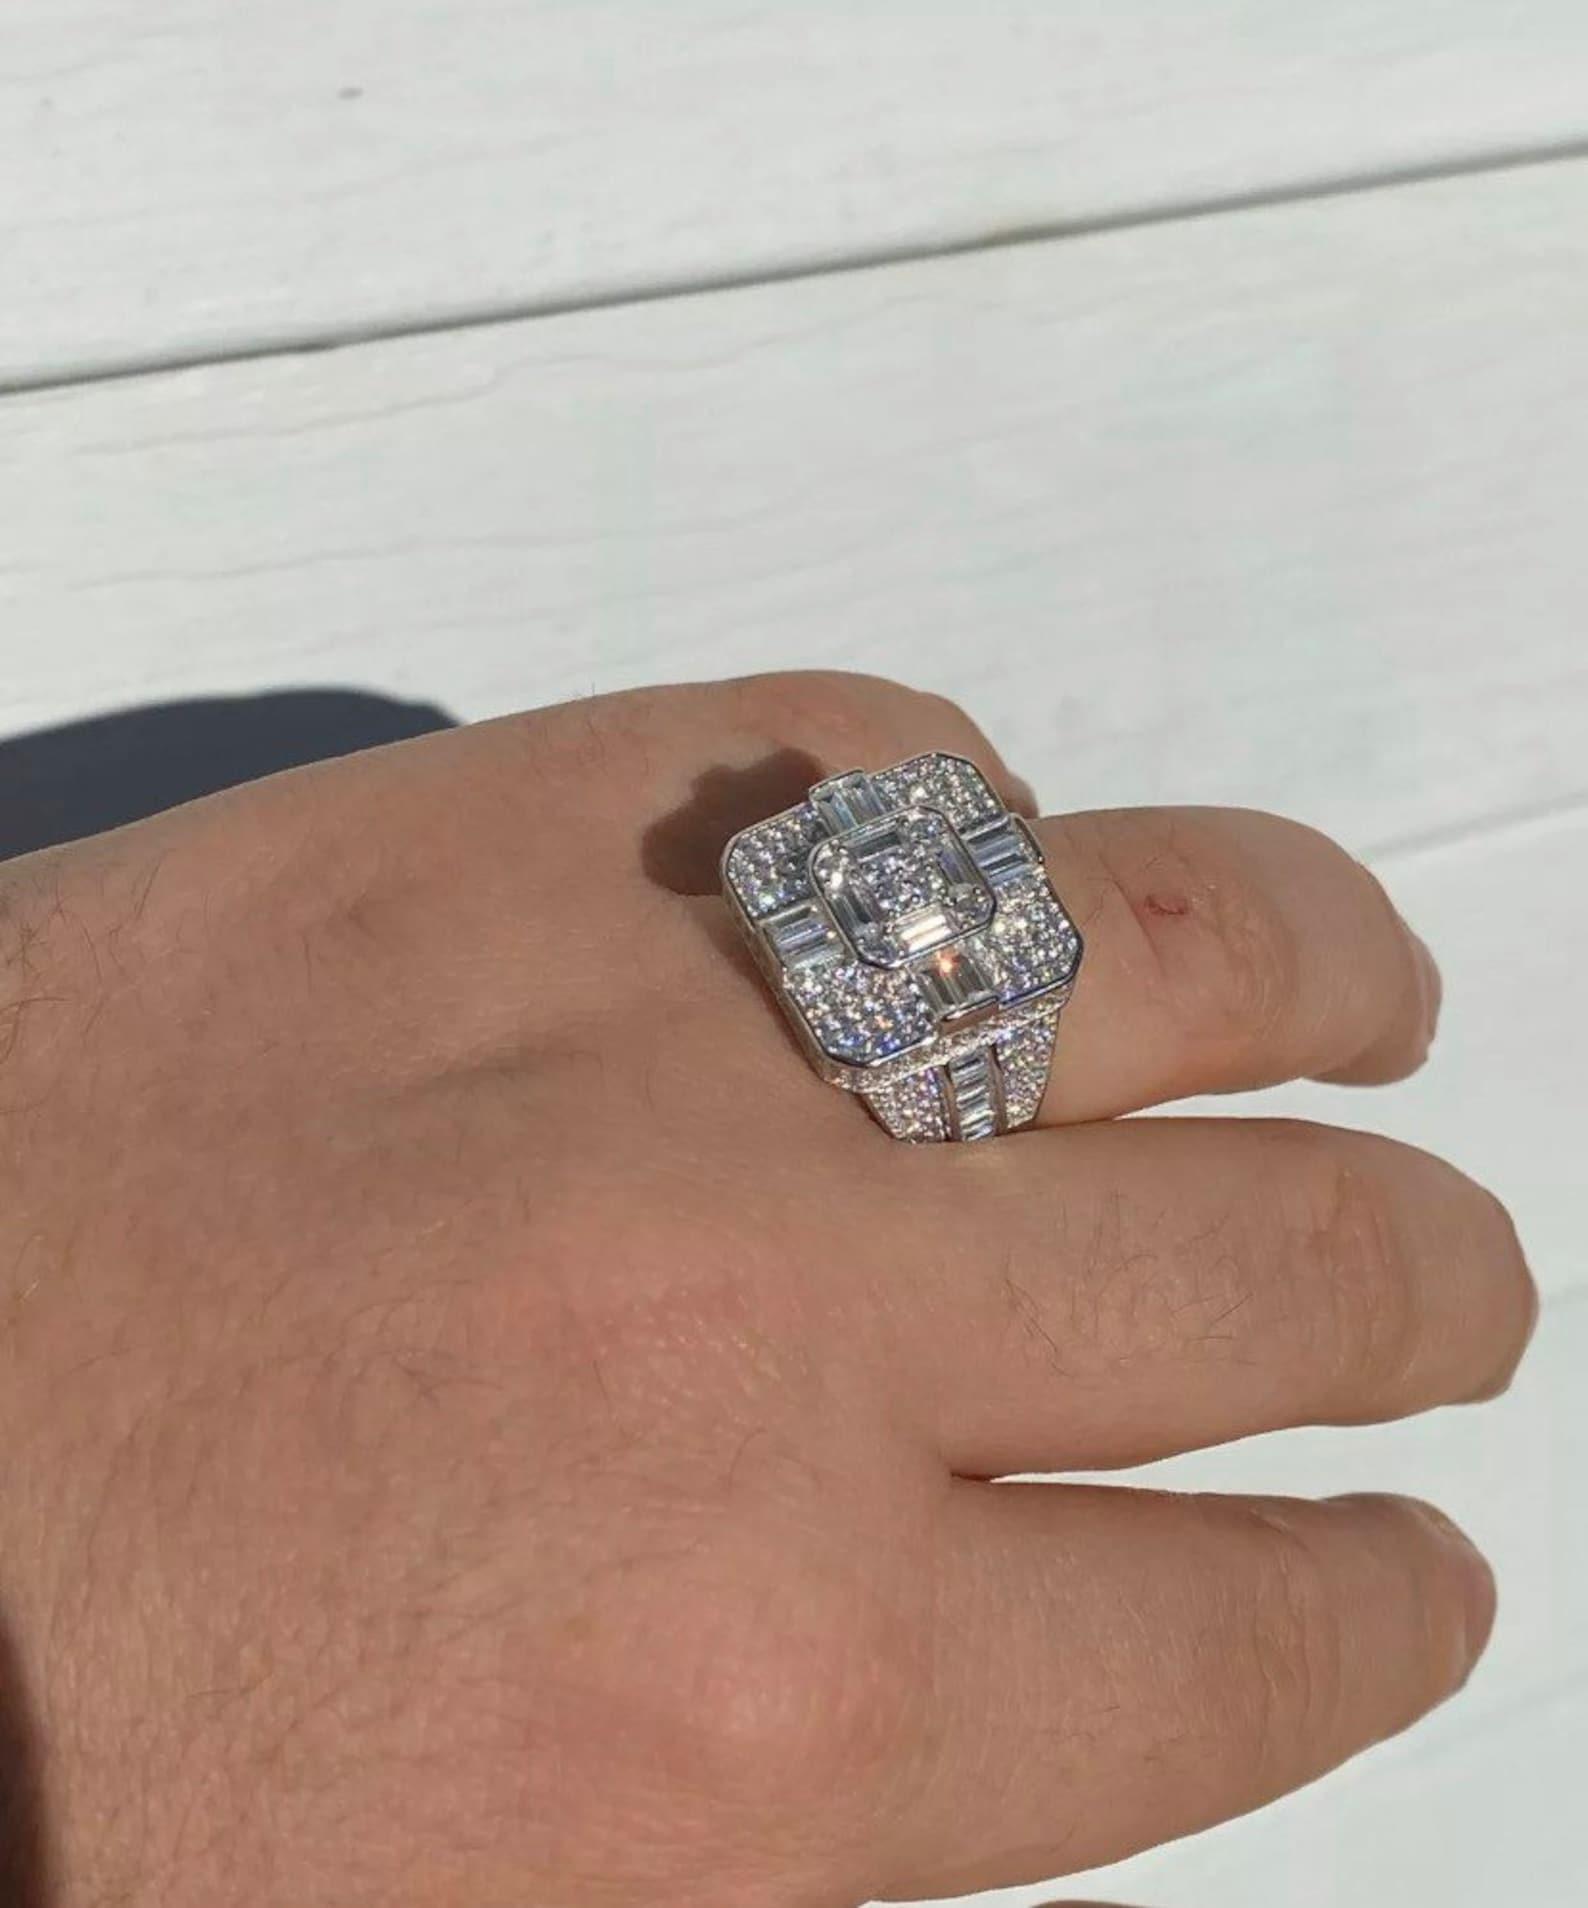 Luxury Hip hop Fully Iced Out Moissanite Baguette Diamond Champion Men's Rings - JBR Jeweler